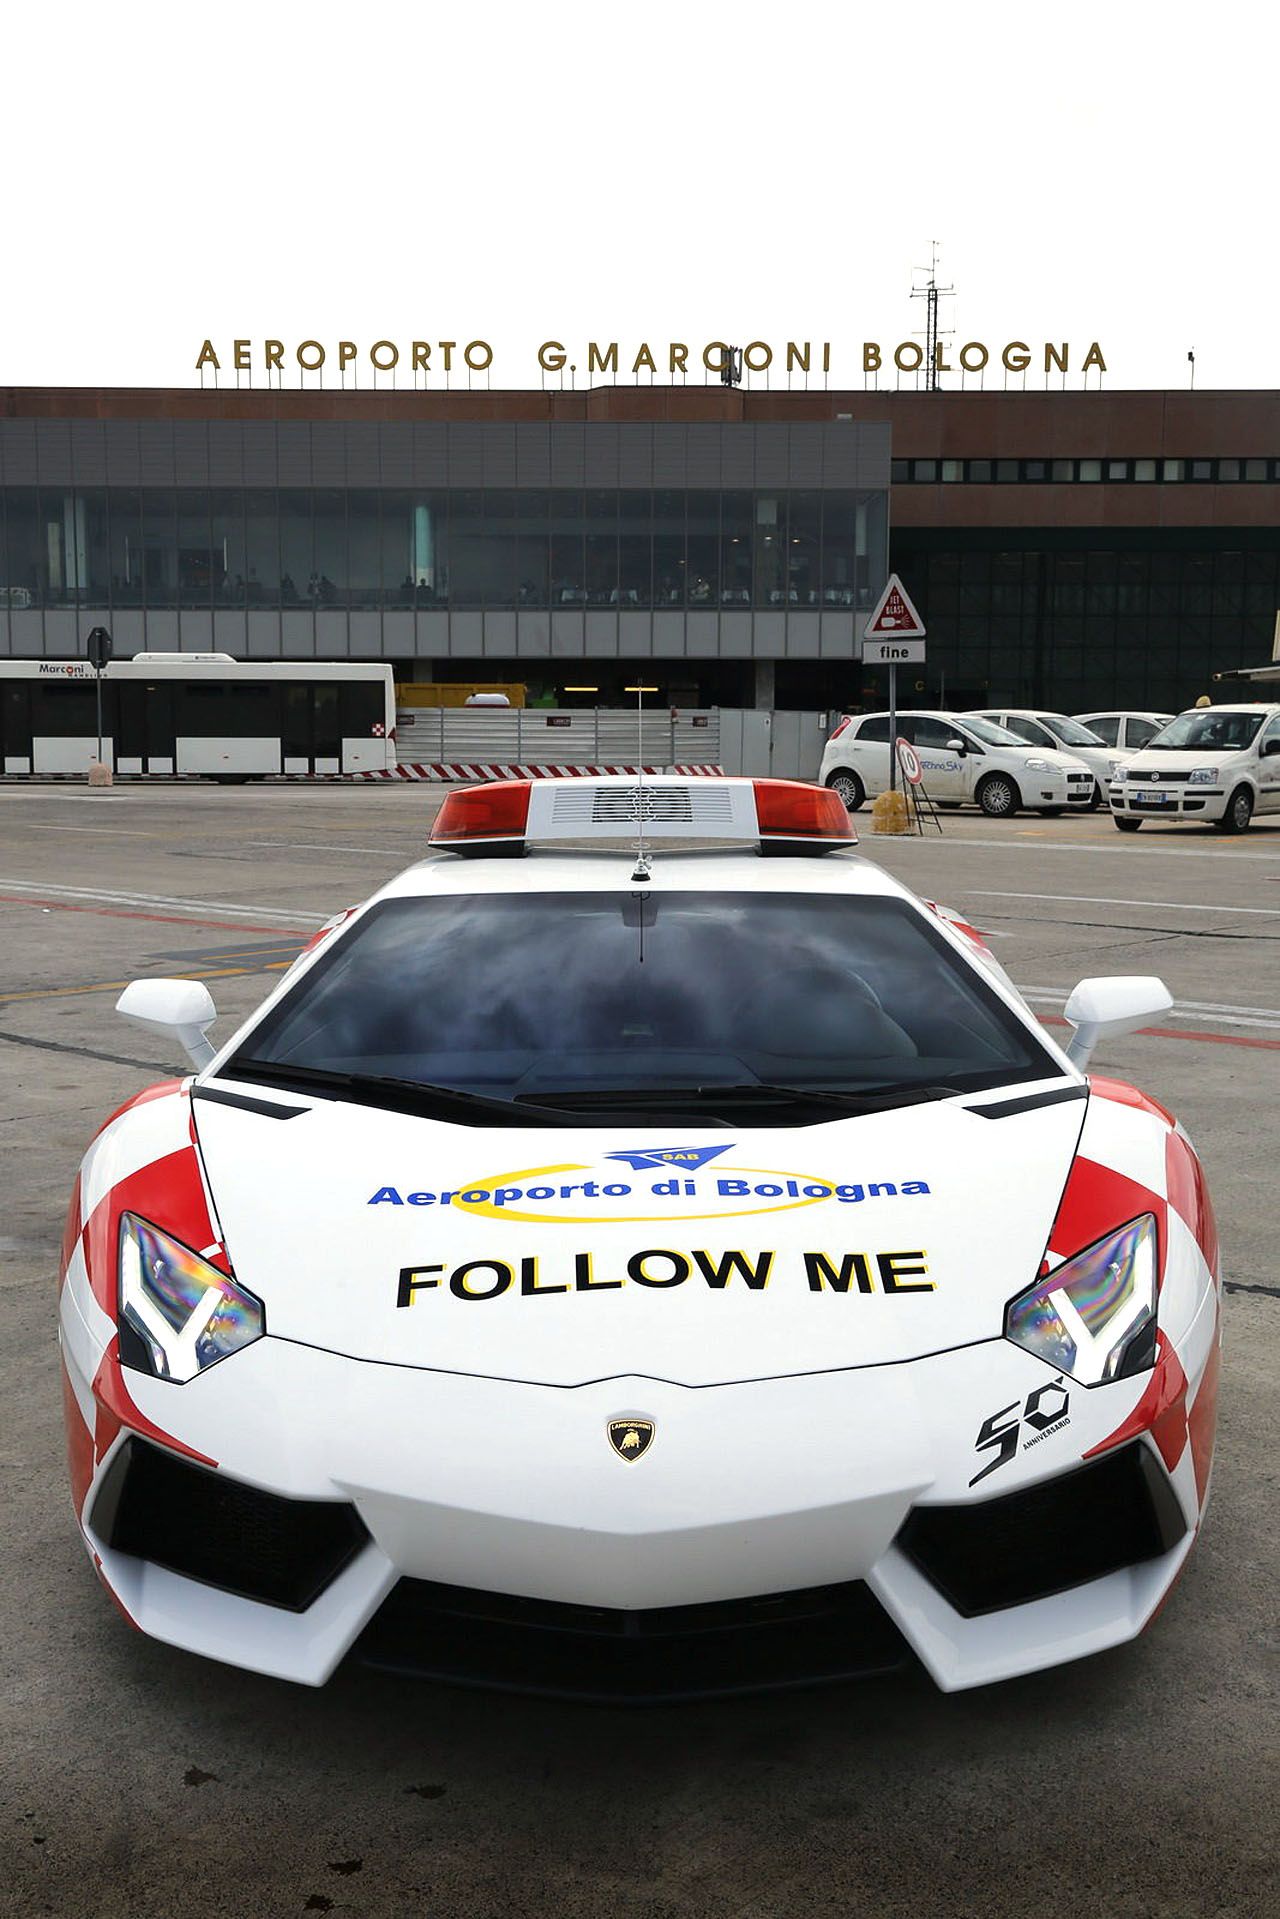 2013 Lamborghini Aventador Follow Me Car